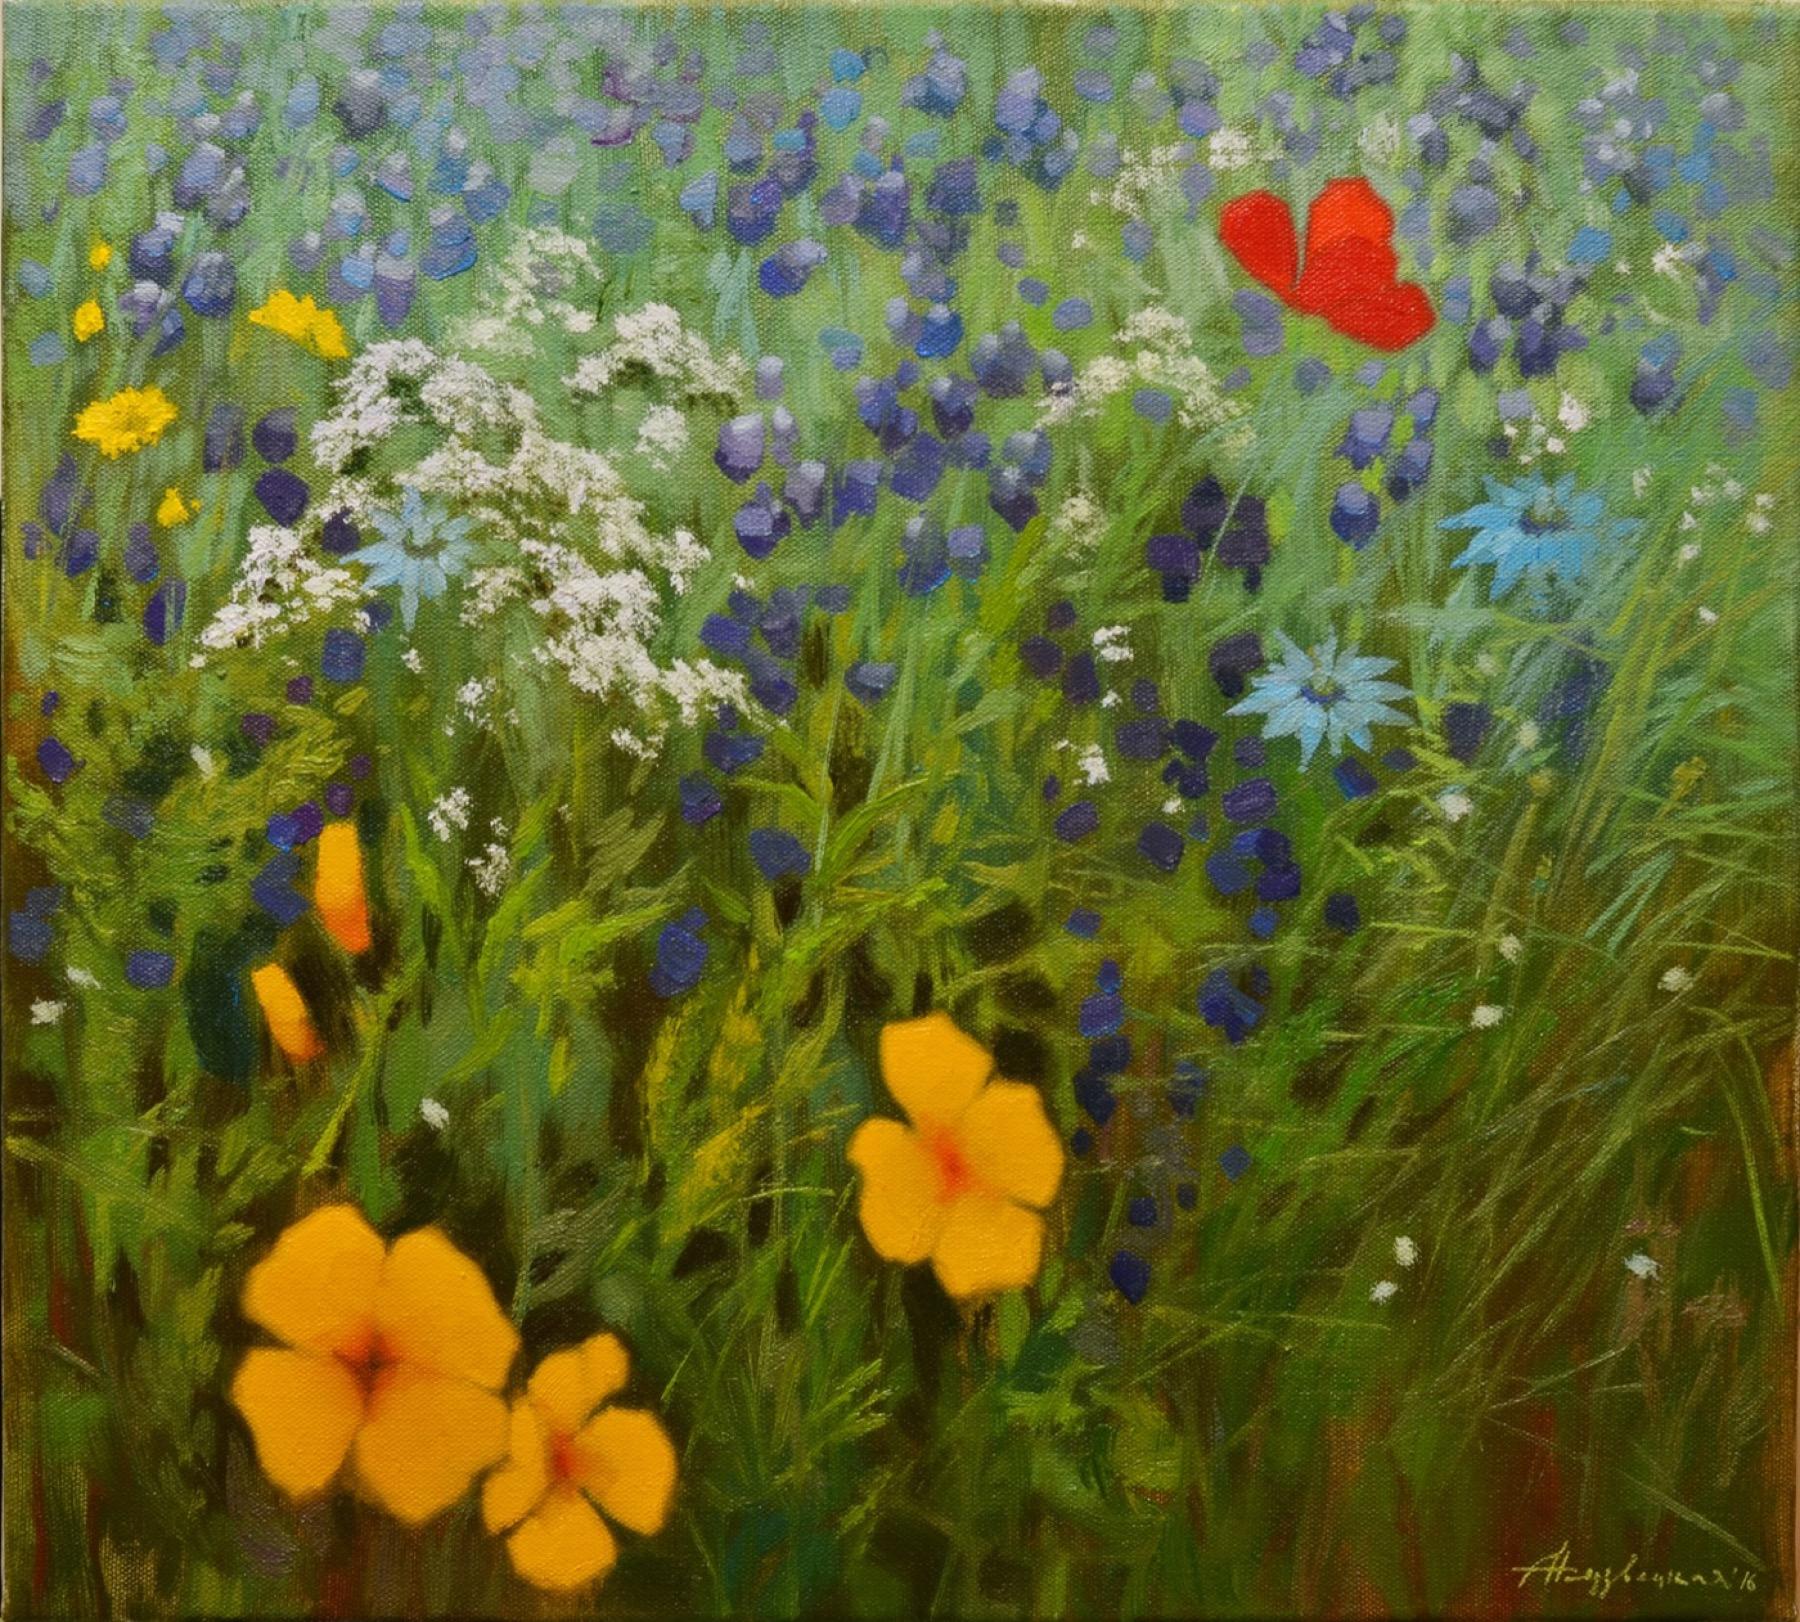 травы и цветы Бретани. Original modern art painting